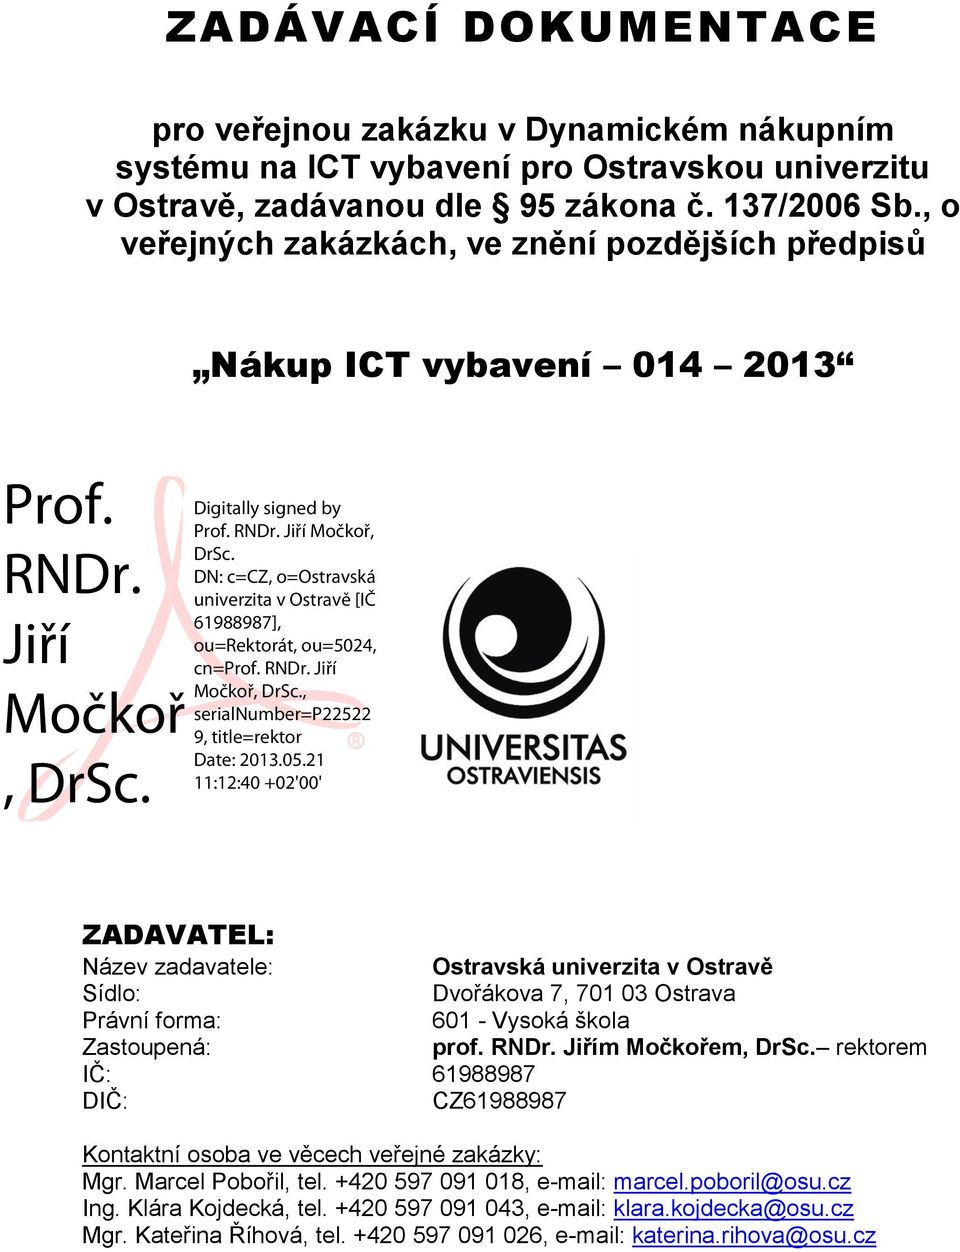 Digitally signed by Prof. RNDr. Jiří Močkoř, DrSc. DN: c=cz, o=ostravská univerzita v Ostravě [IČ 61988987], ou=rektorát, ou=5024, cn=prof. RNDr. Jiří Močkoř, DrSc., serialnumber=p22522 9, title=rektor Date: 2013.